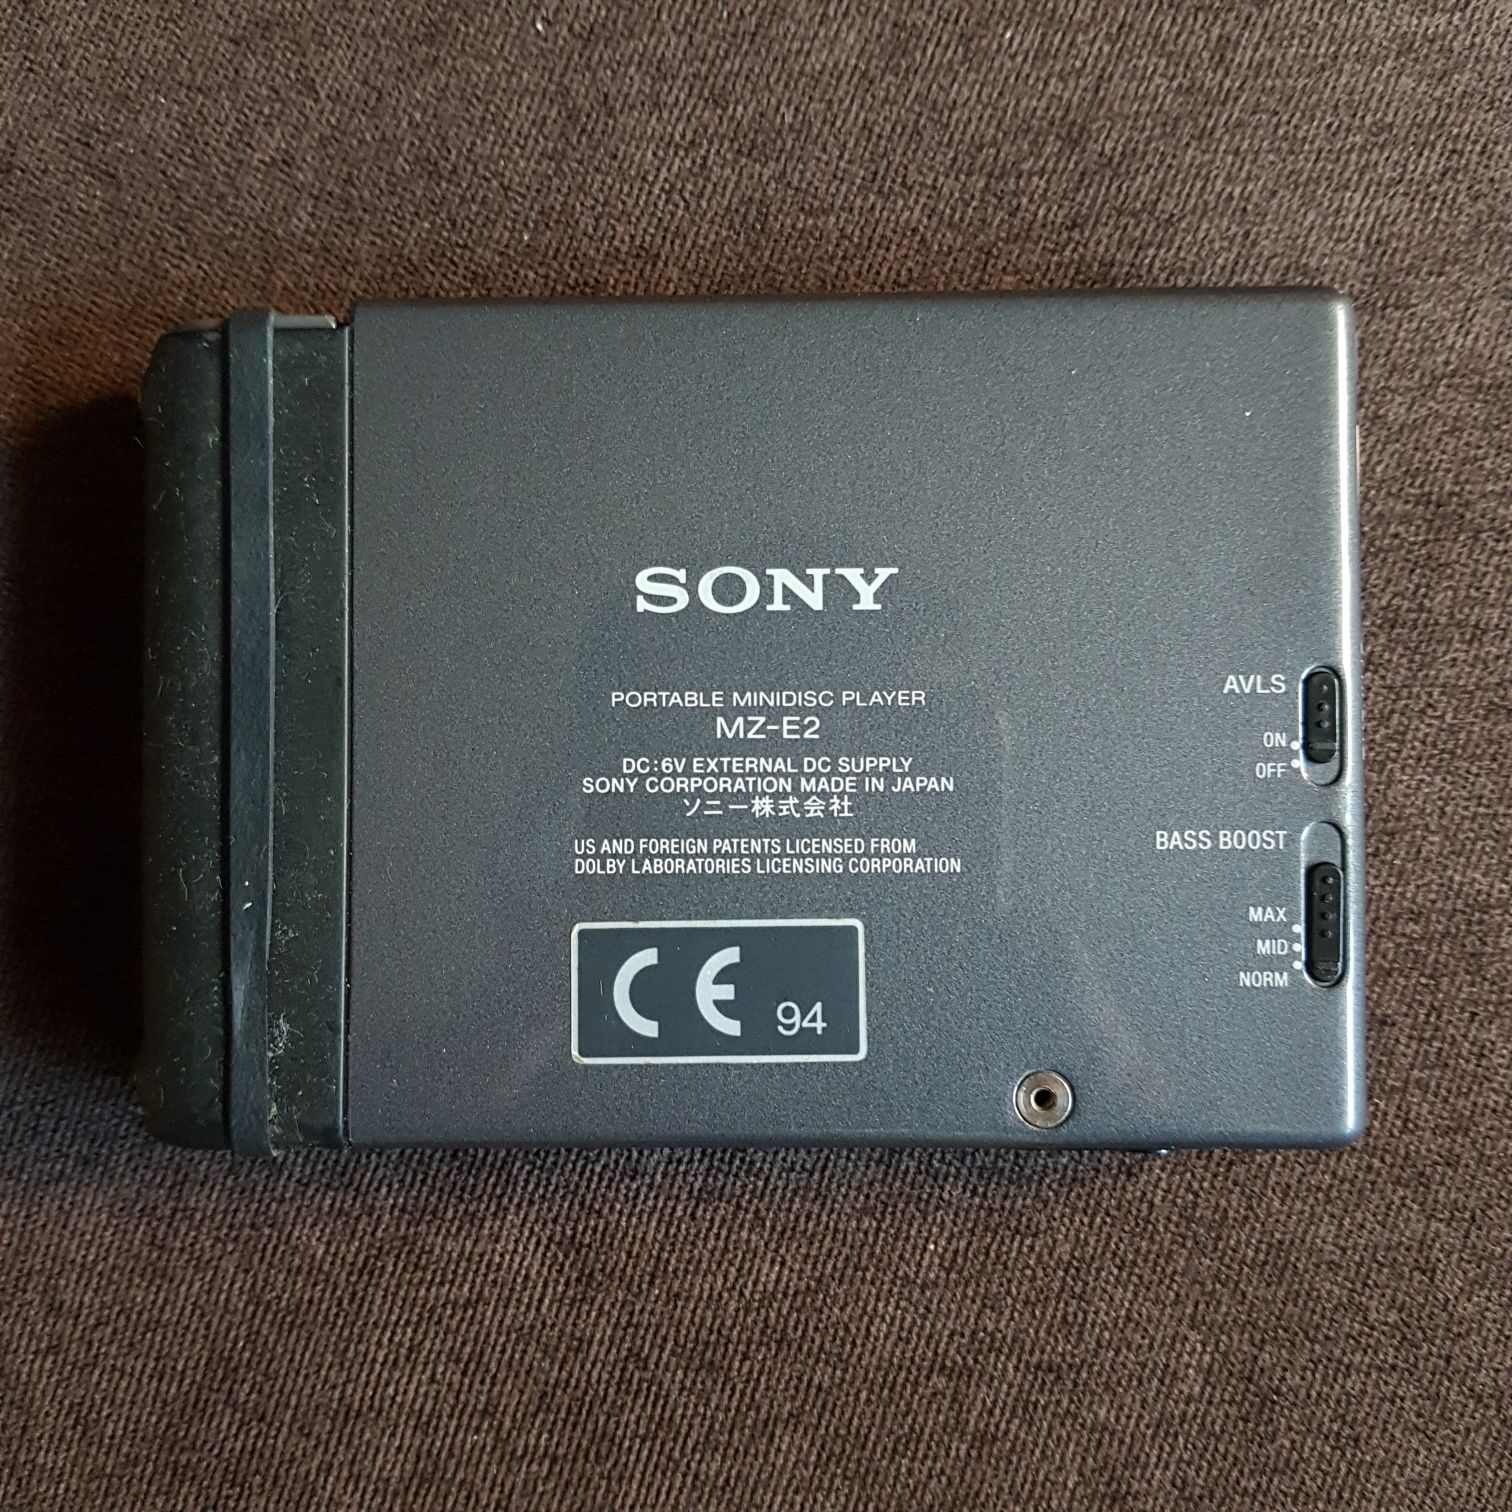 Vand Sony MZ-E2 Minidisc Player